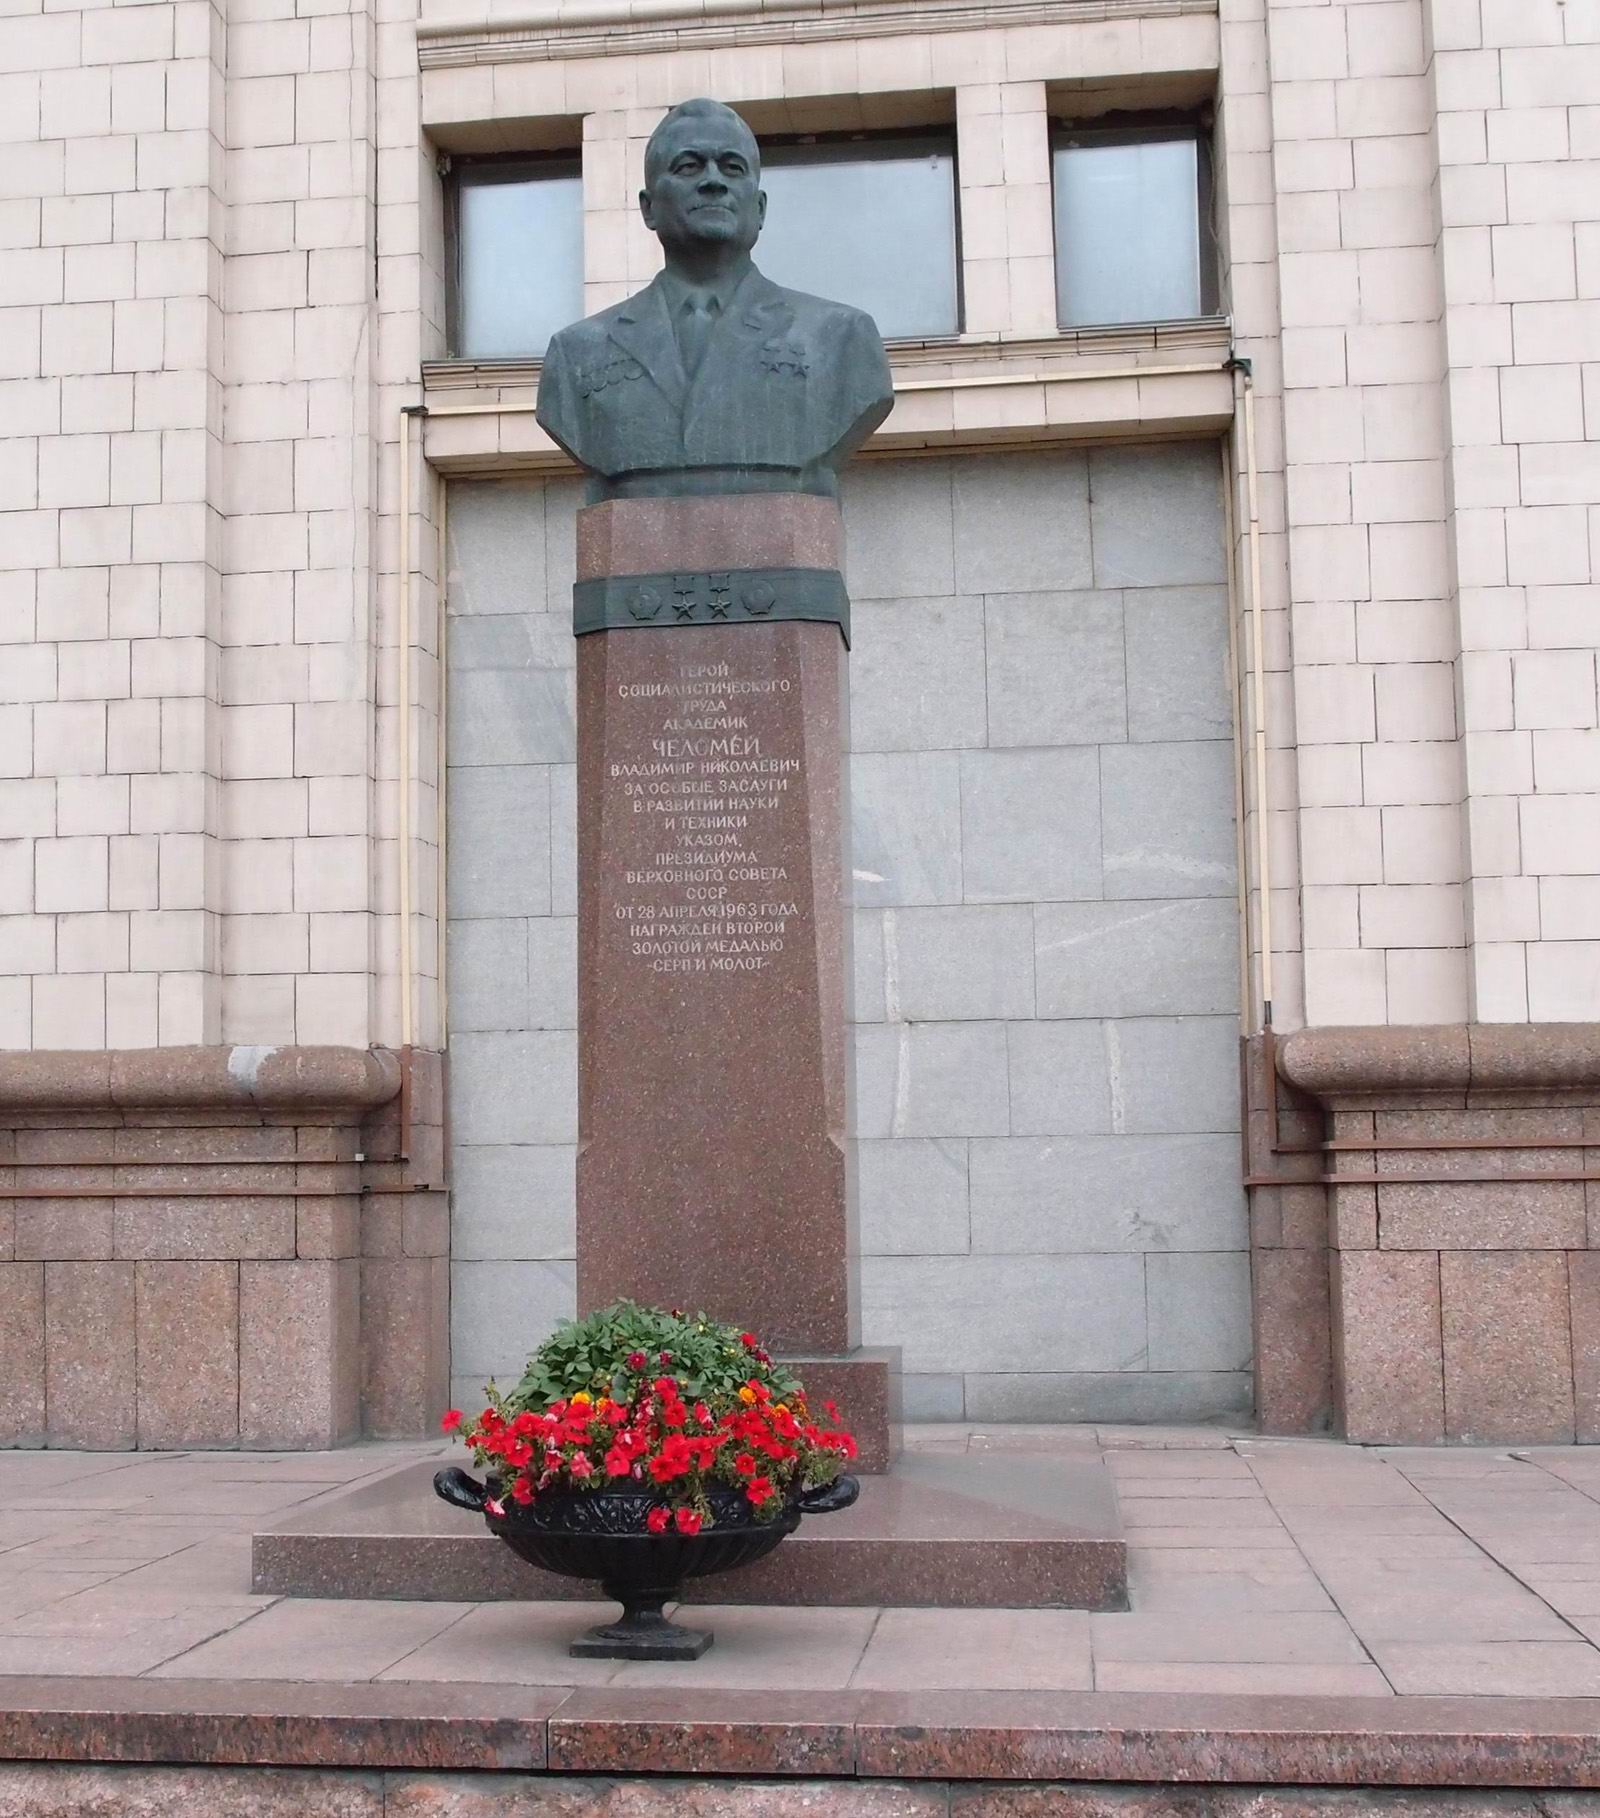 Памятник Челомею В.Н. (1914–1984), ск. В.А.Сонин, арх. С.И.Кулев, на Лефортовской набережной (возле МГТУ им. Н.Э.Баумана), открыт в 1984.